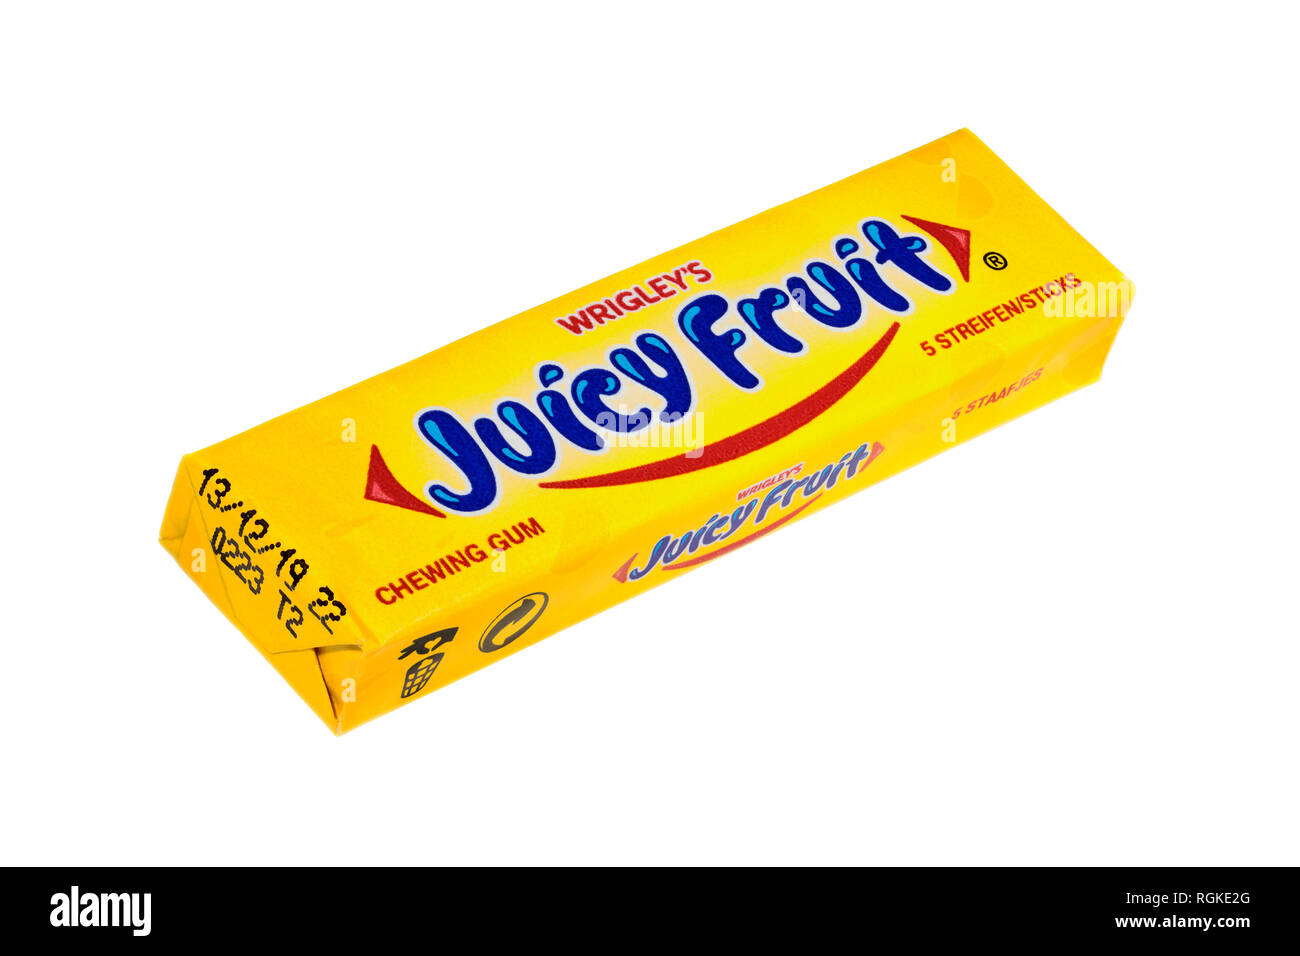 Un pacchetto di 5 bastoncini - 5 streifen - di Wrigleys succoso frutto di chewing gum con lo smaltimento e il riciclaggio simboli isolati su sfondo bianco Foto Stock